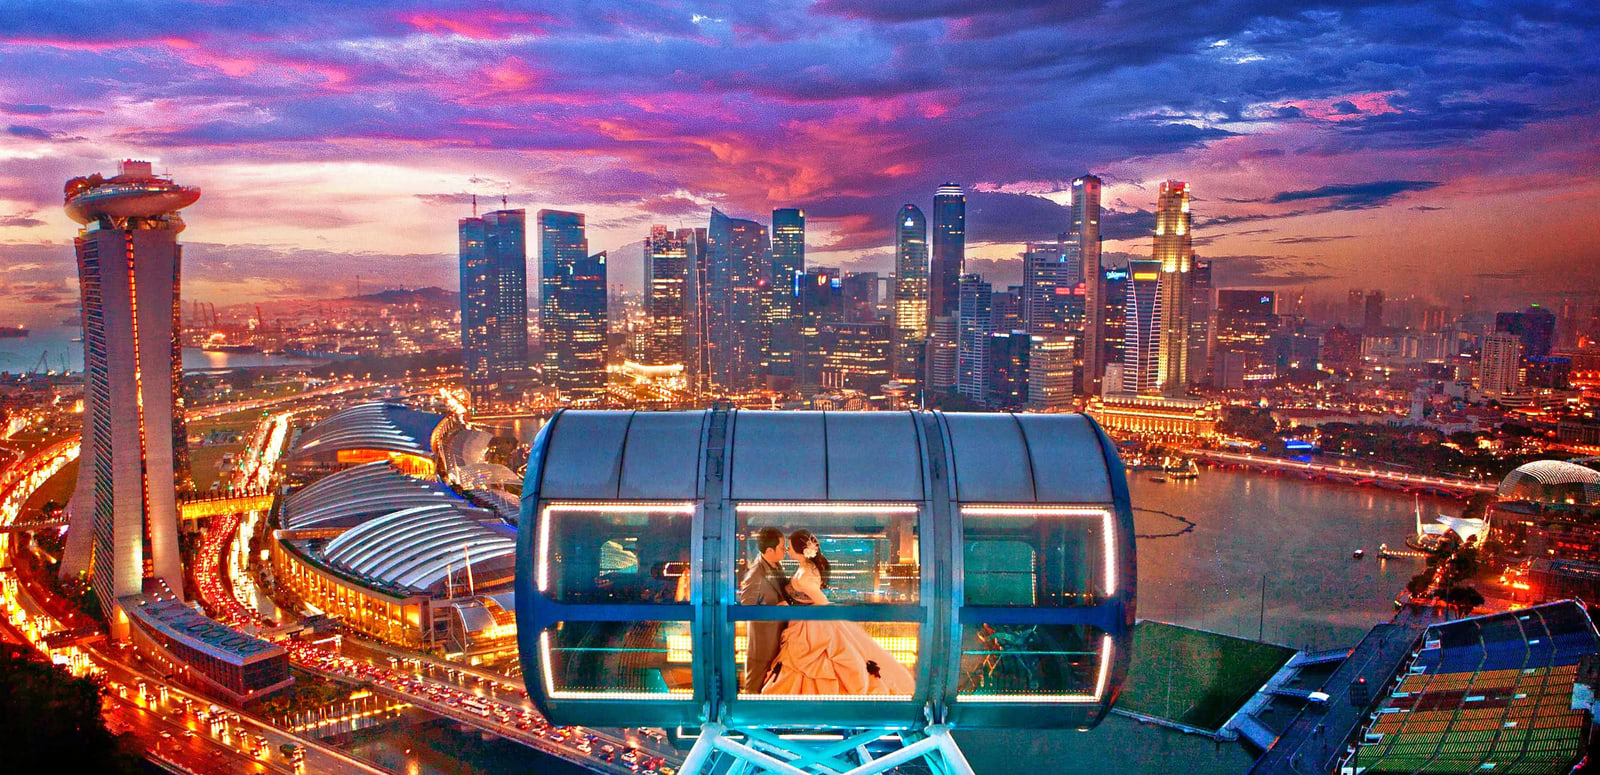 Một vòng quay ngắm cảnh trên Singapore Flyer sẽ đưa bạn lên cao 165 mét so với mặt đất